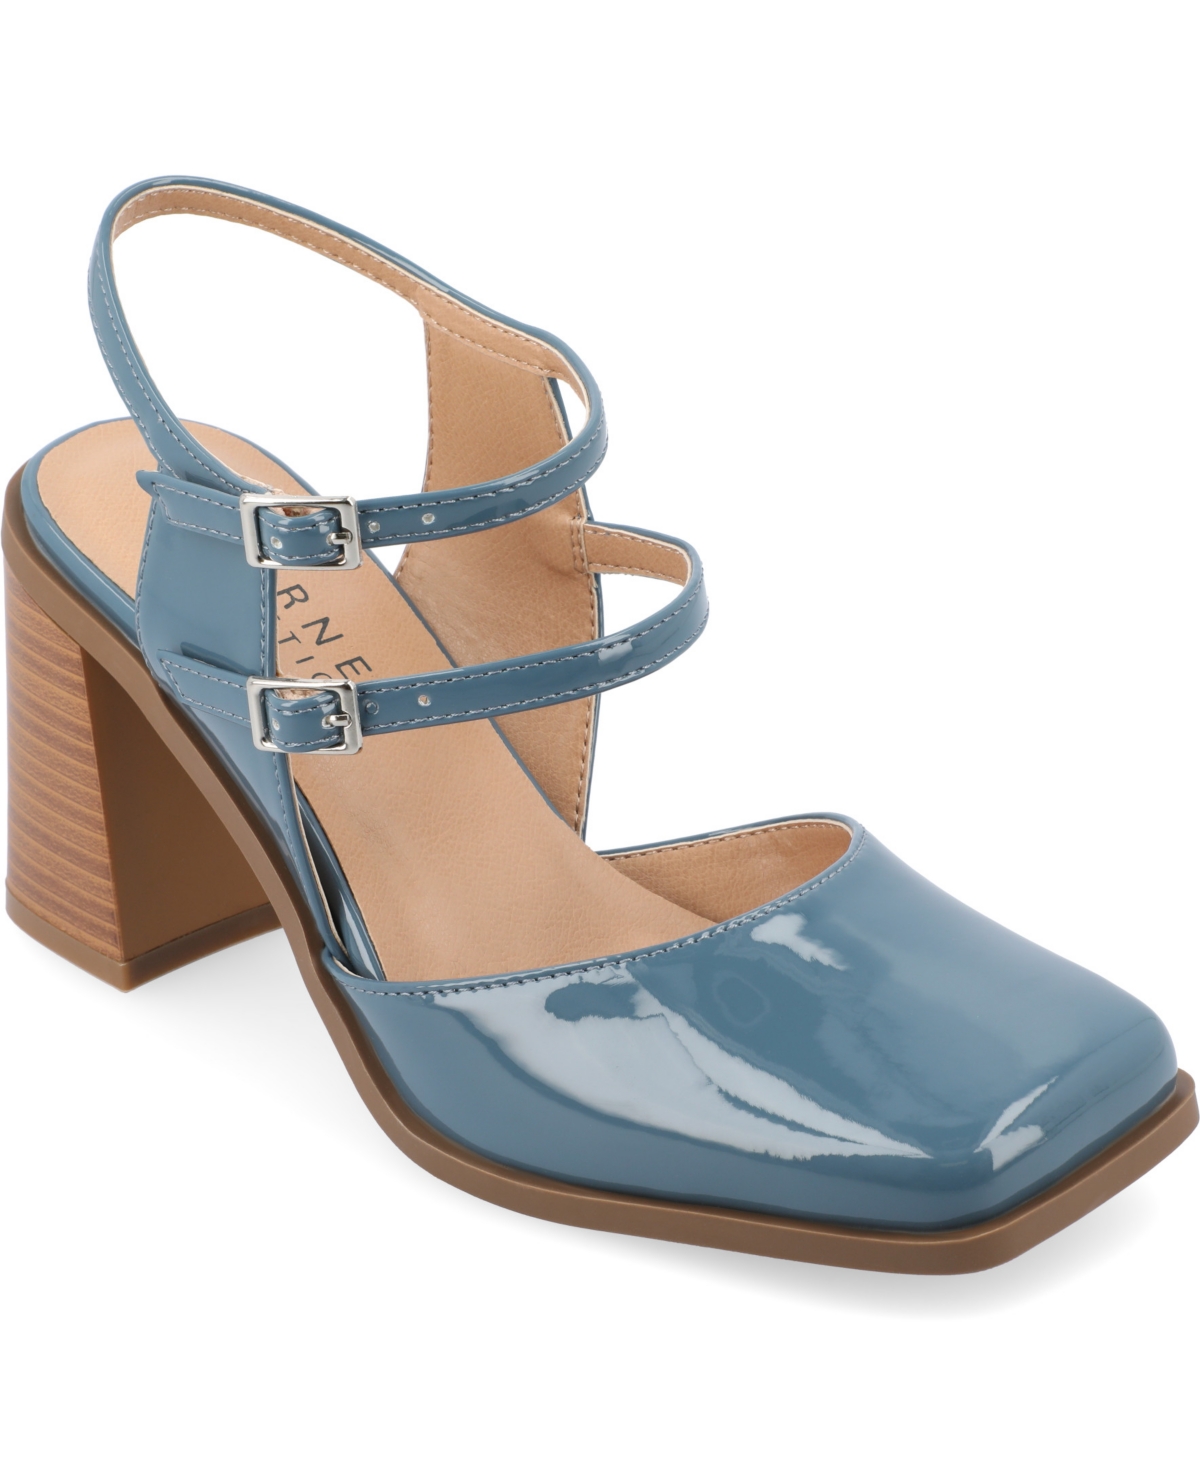 Women's Caisey Tru Comfort Block Heel Pumps - Patent, Blue